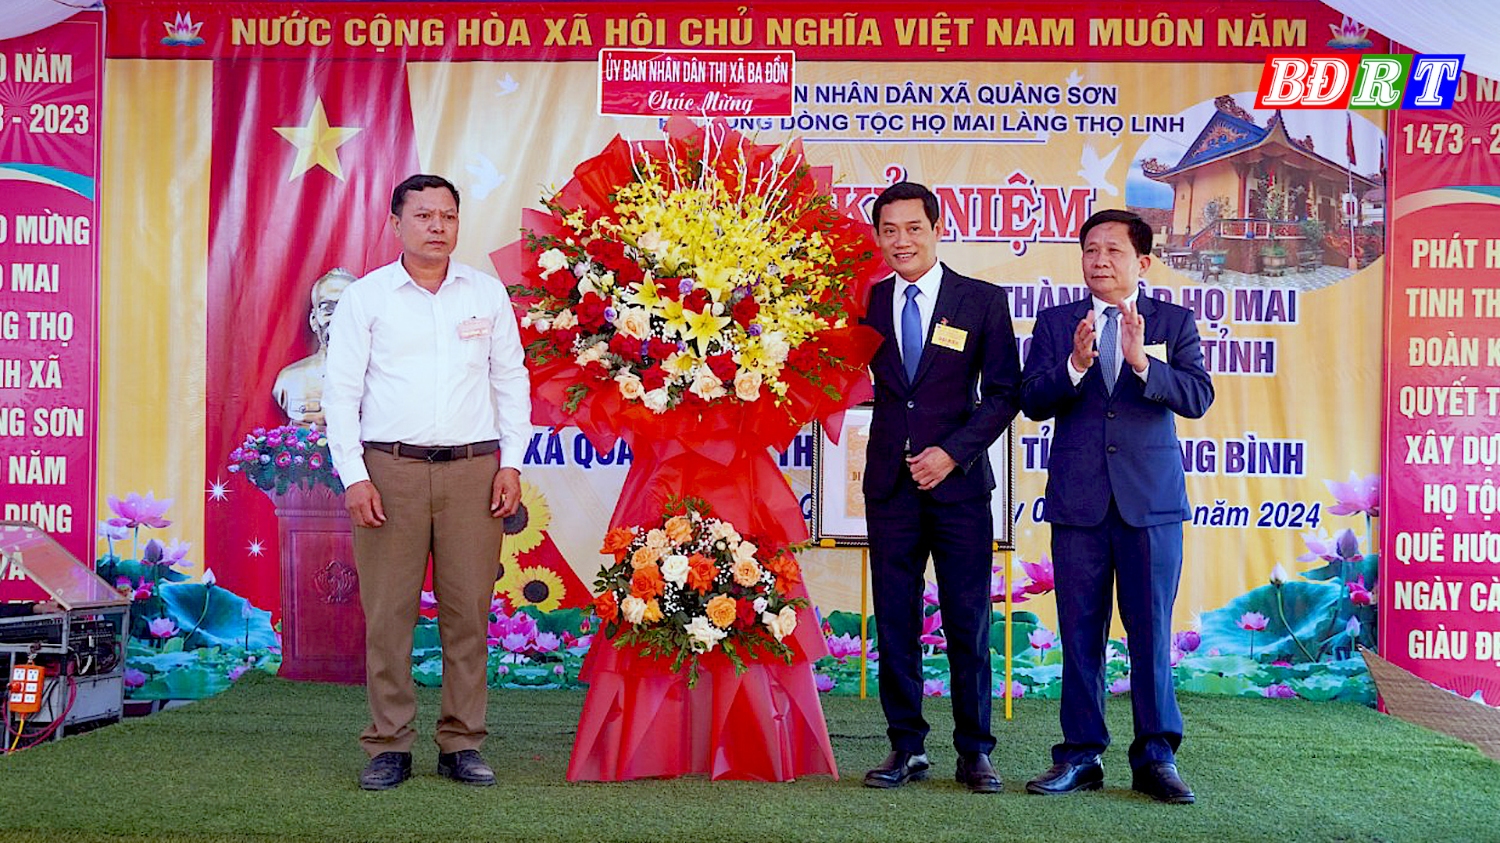 Đồng chí Nguyễn Văn Tình ThUV Phó Chủ tịch UBND thị xã Ba Đồn tặng hoa chúc mừng dòng họ Mai làng Thọ Linh